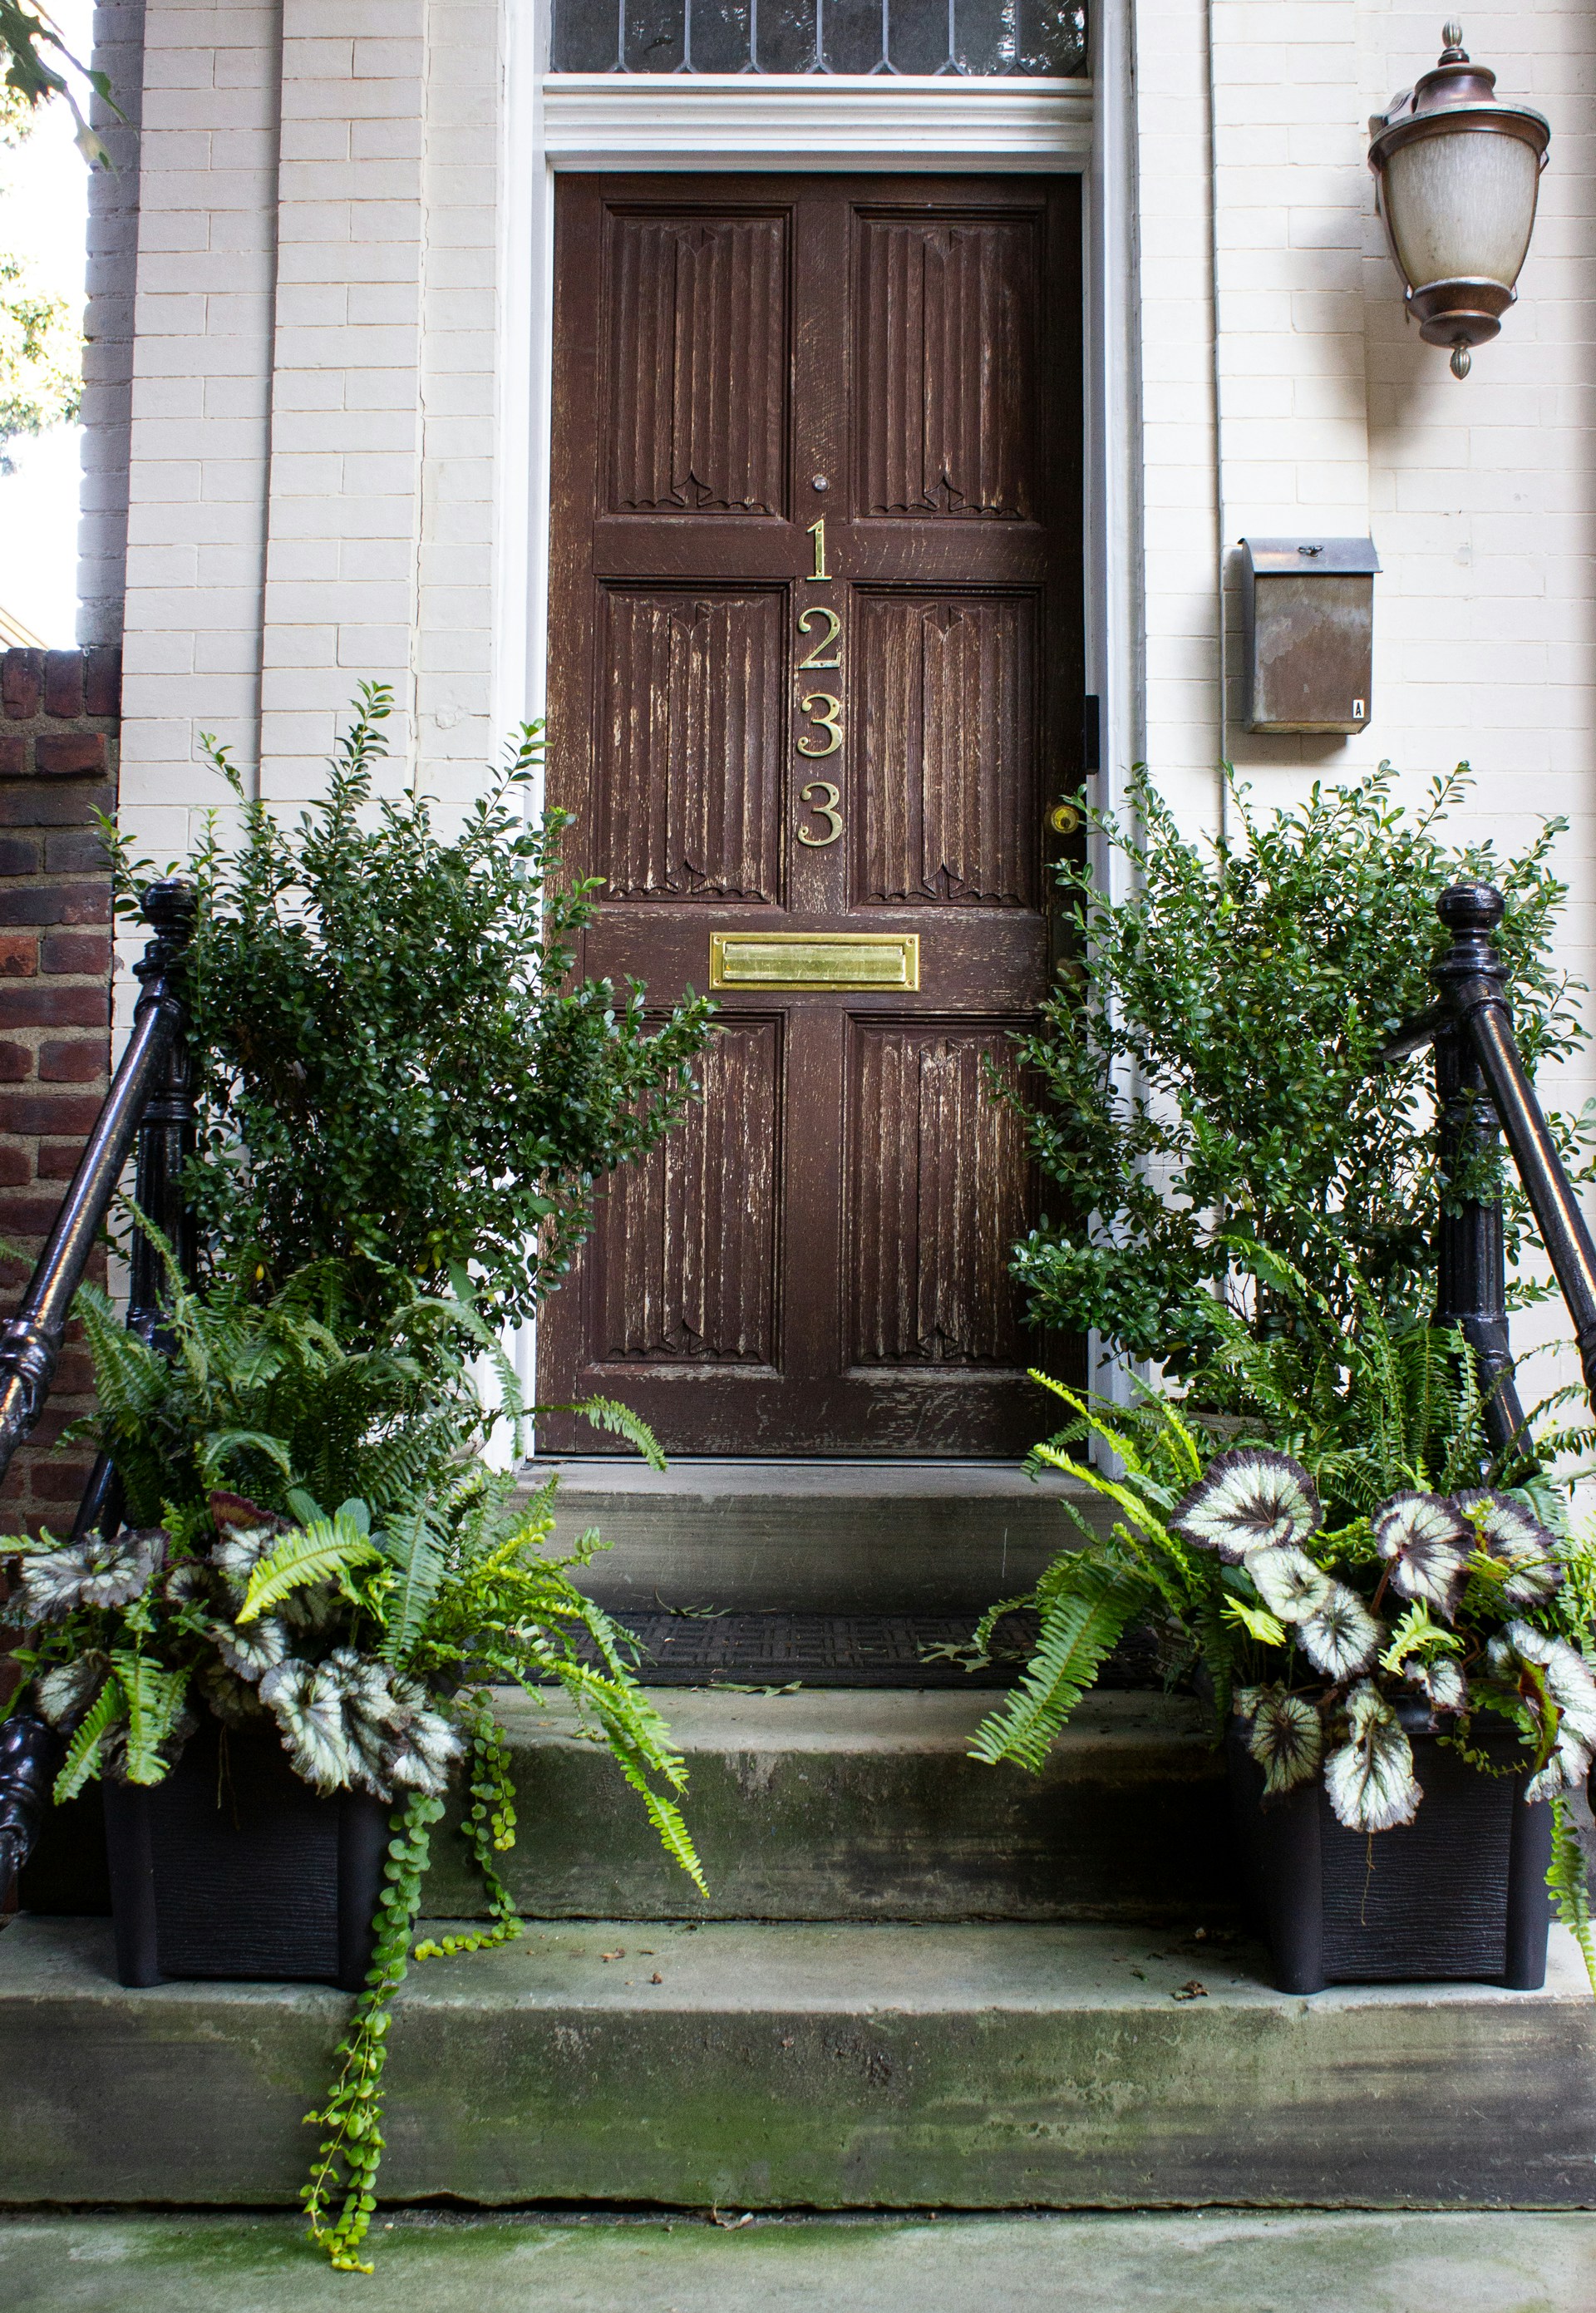 A brown wooden door with green plants | Source: Unsplash